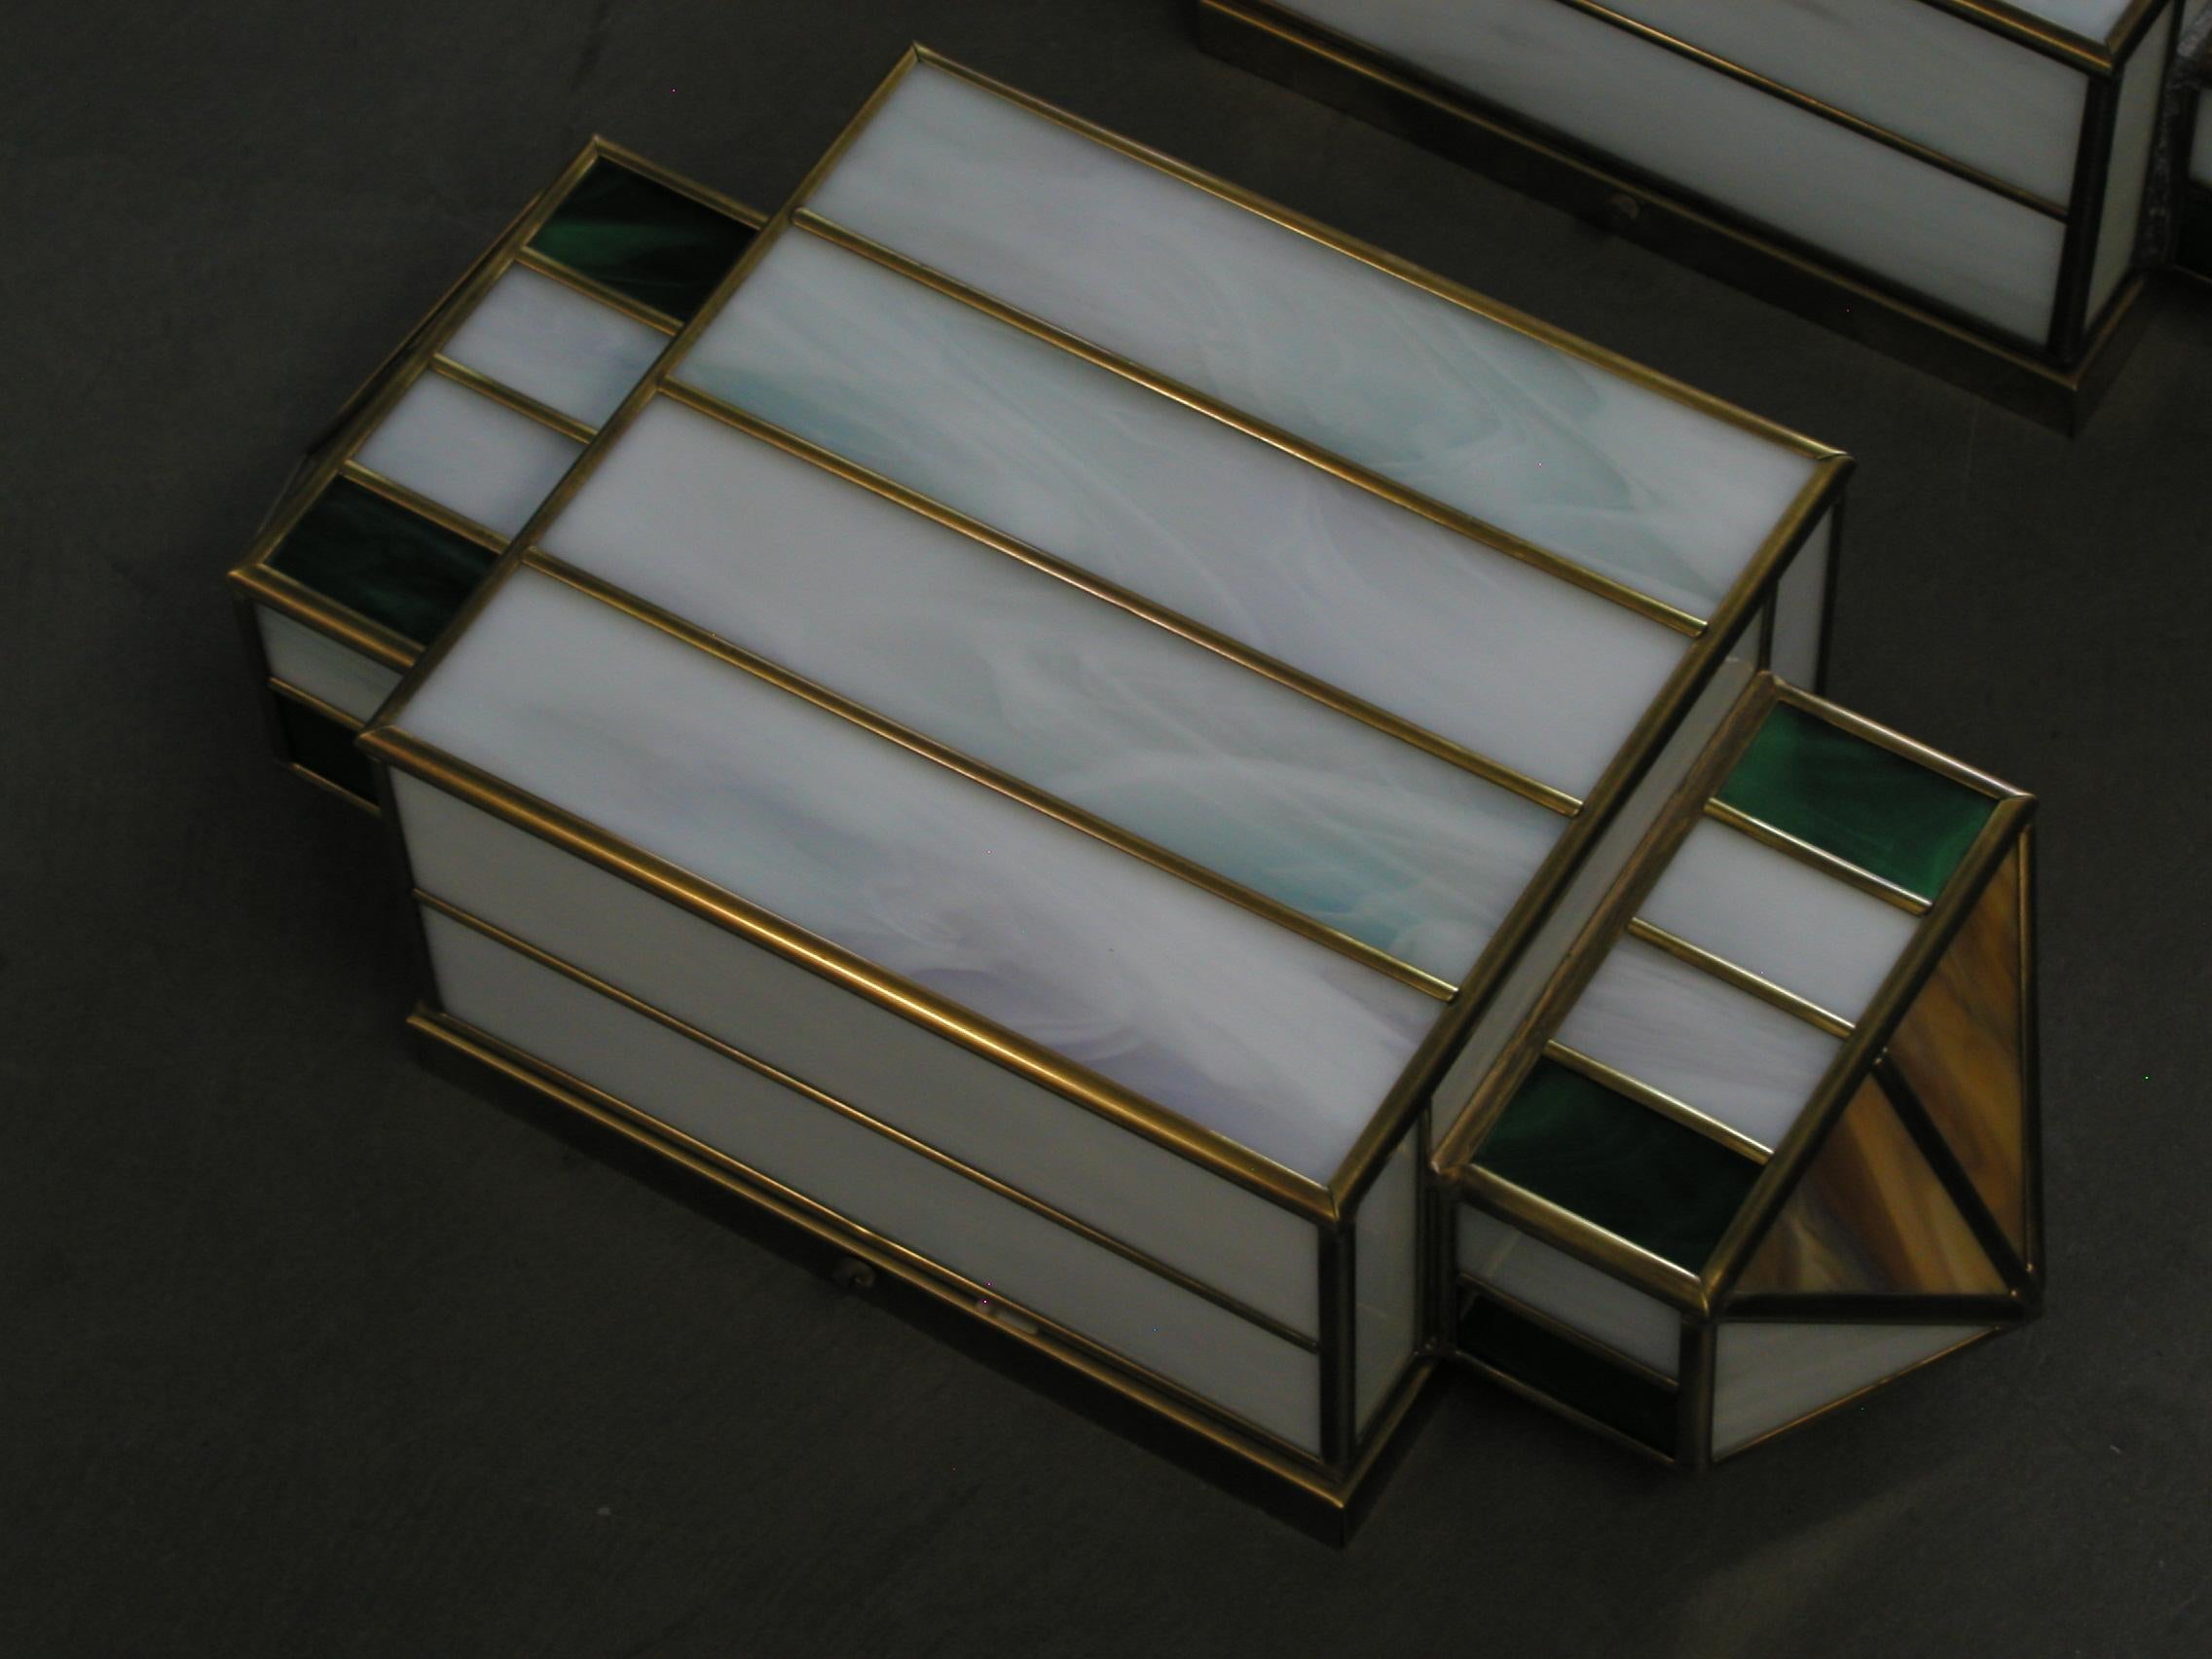 Ensemble de deux appliques en verre de Murano et laiton fabriquées dans les années 80 par des artisans italiens.
Fabriquées artisanalement avec du verre de Murano brun, vert et blanc et du laiton, ces magnifiques pièces incarnent parfaitement